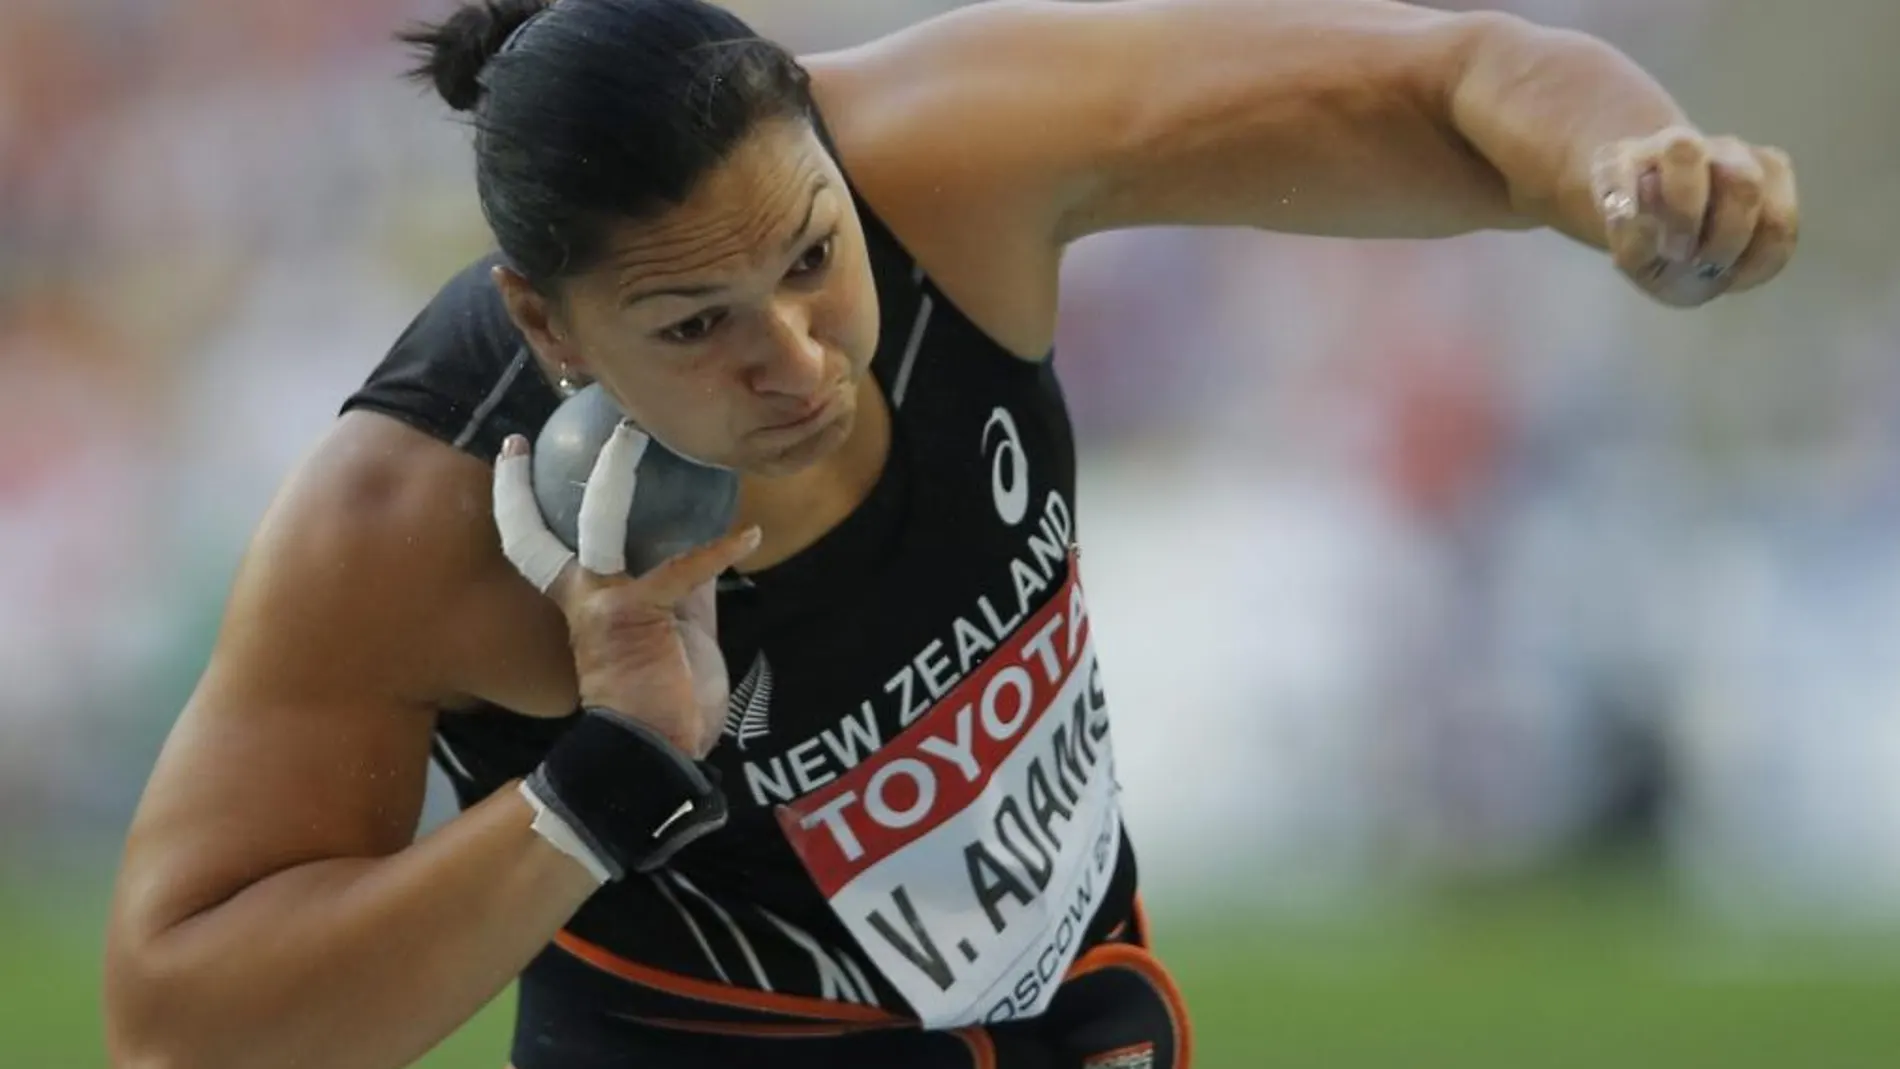 La atleta de Nueva Zelanda Valerie Adams compite en lanzamiento de peso durante los Mundiales de Atletismo Moscú 2013 que se celebran en el Estadio Olímpico Luzhnikí de la capital rusa hoy, lunes 12 de agosto de 2013.